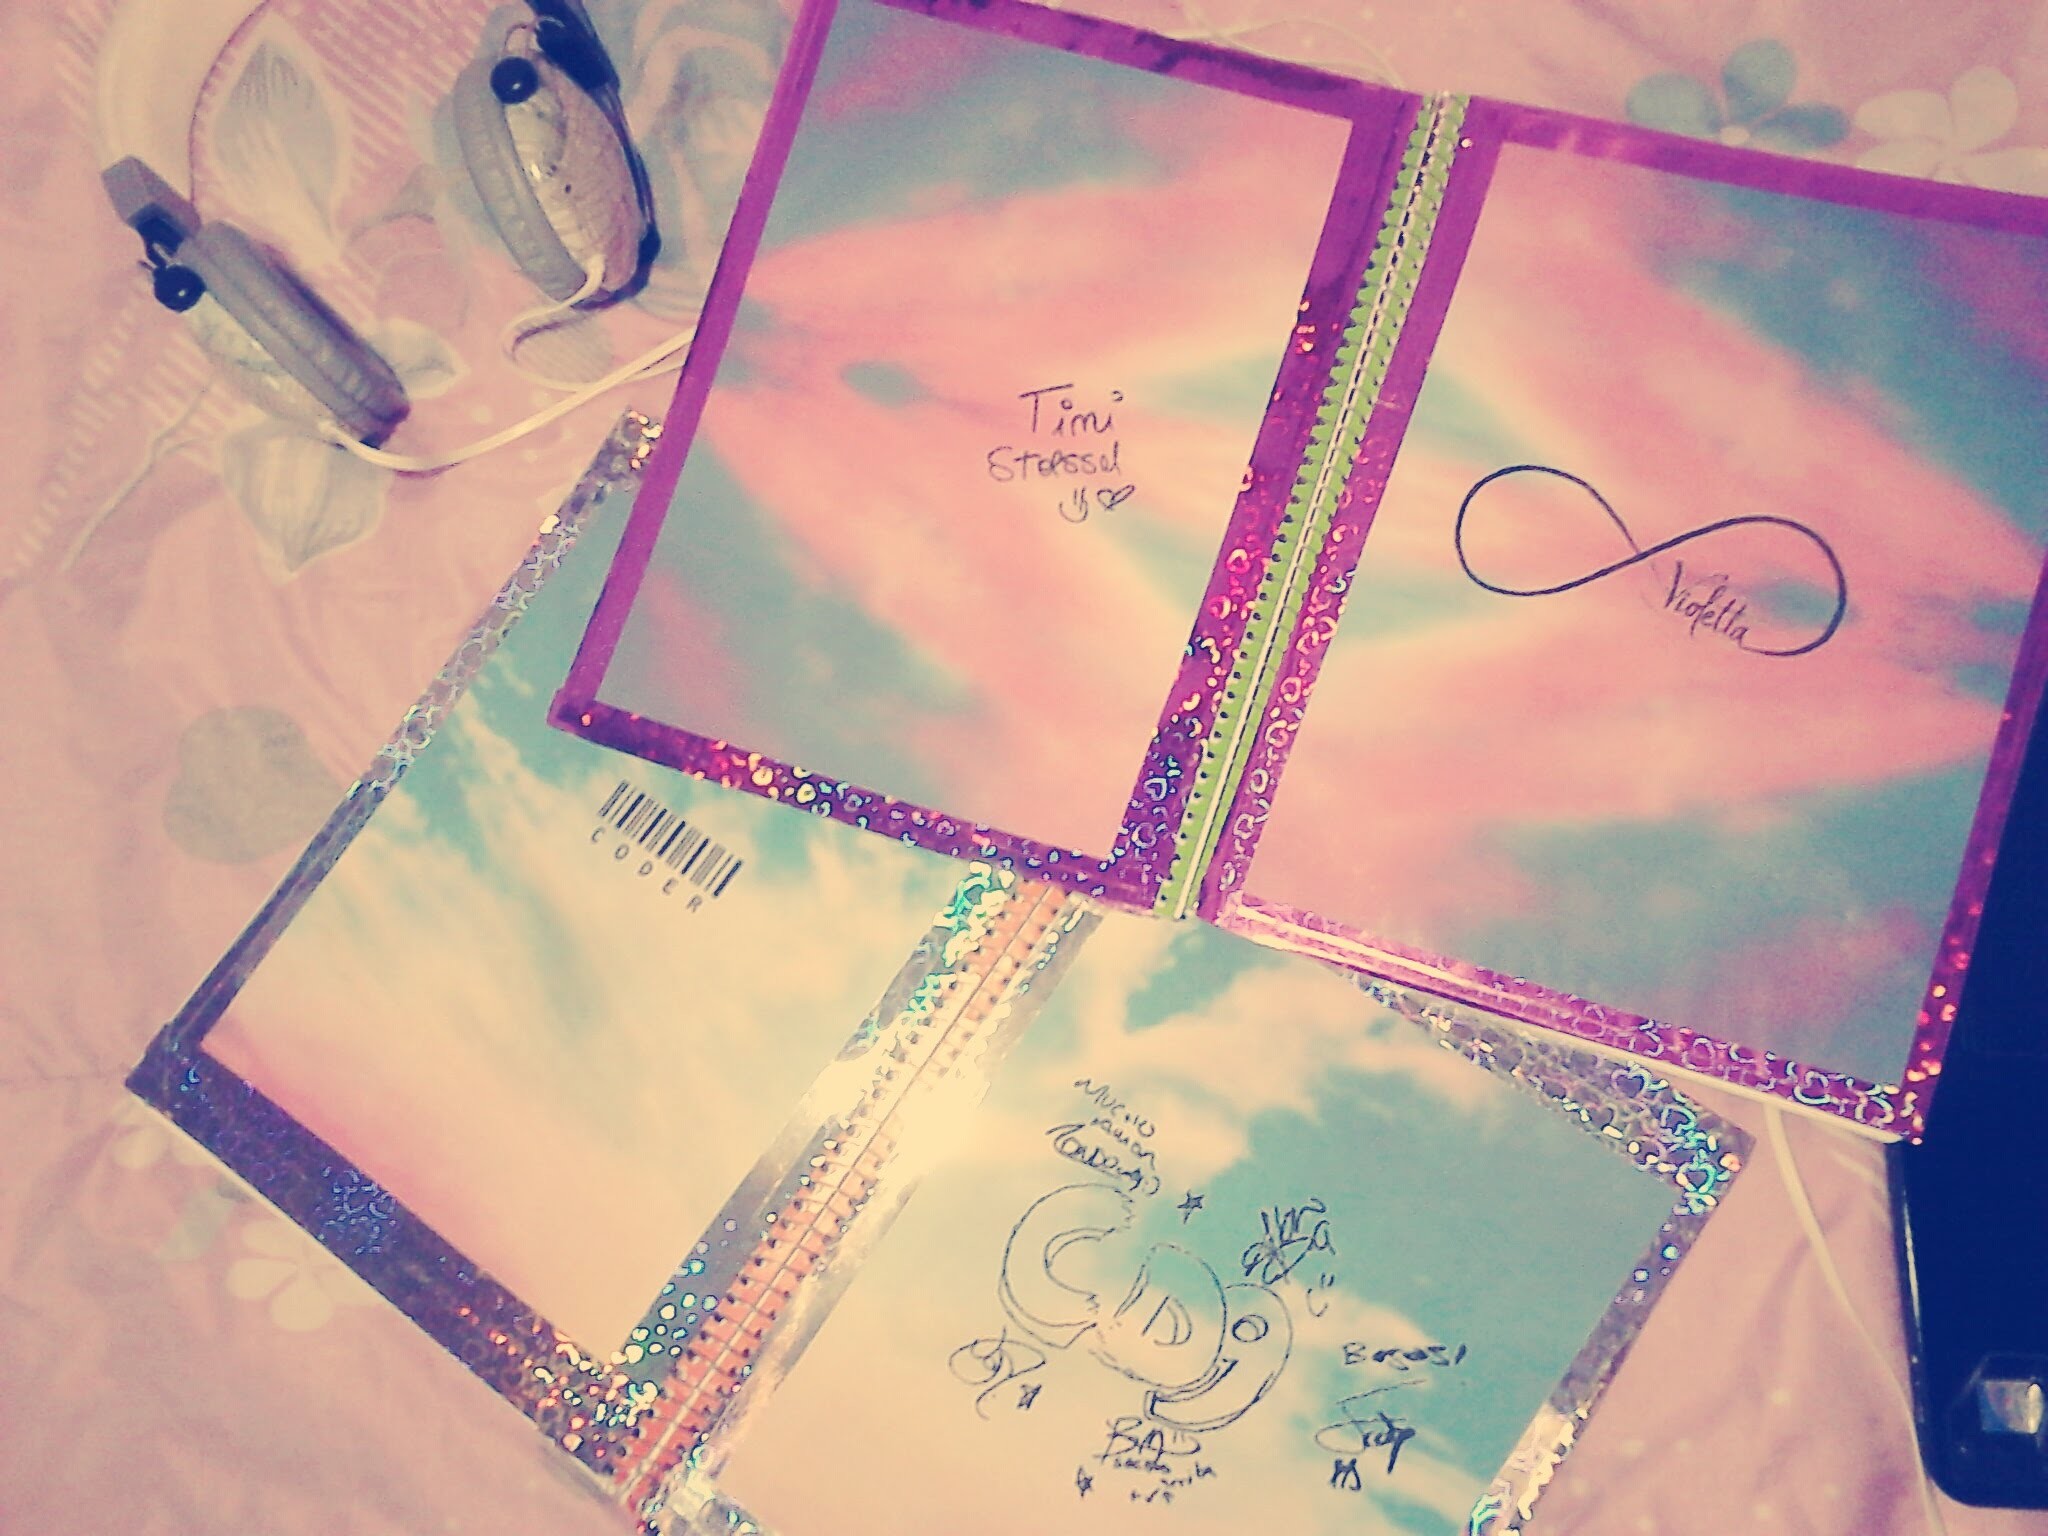 Decora tus cuadernos con CD9  y Violetta ;)